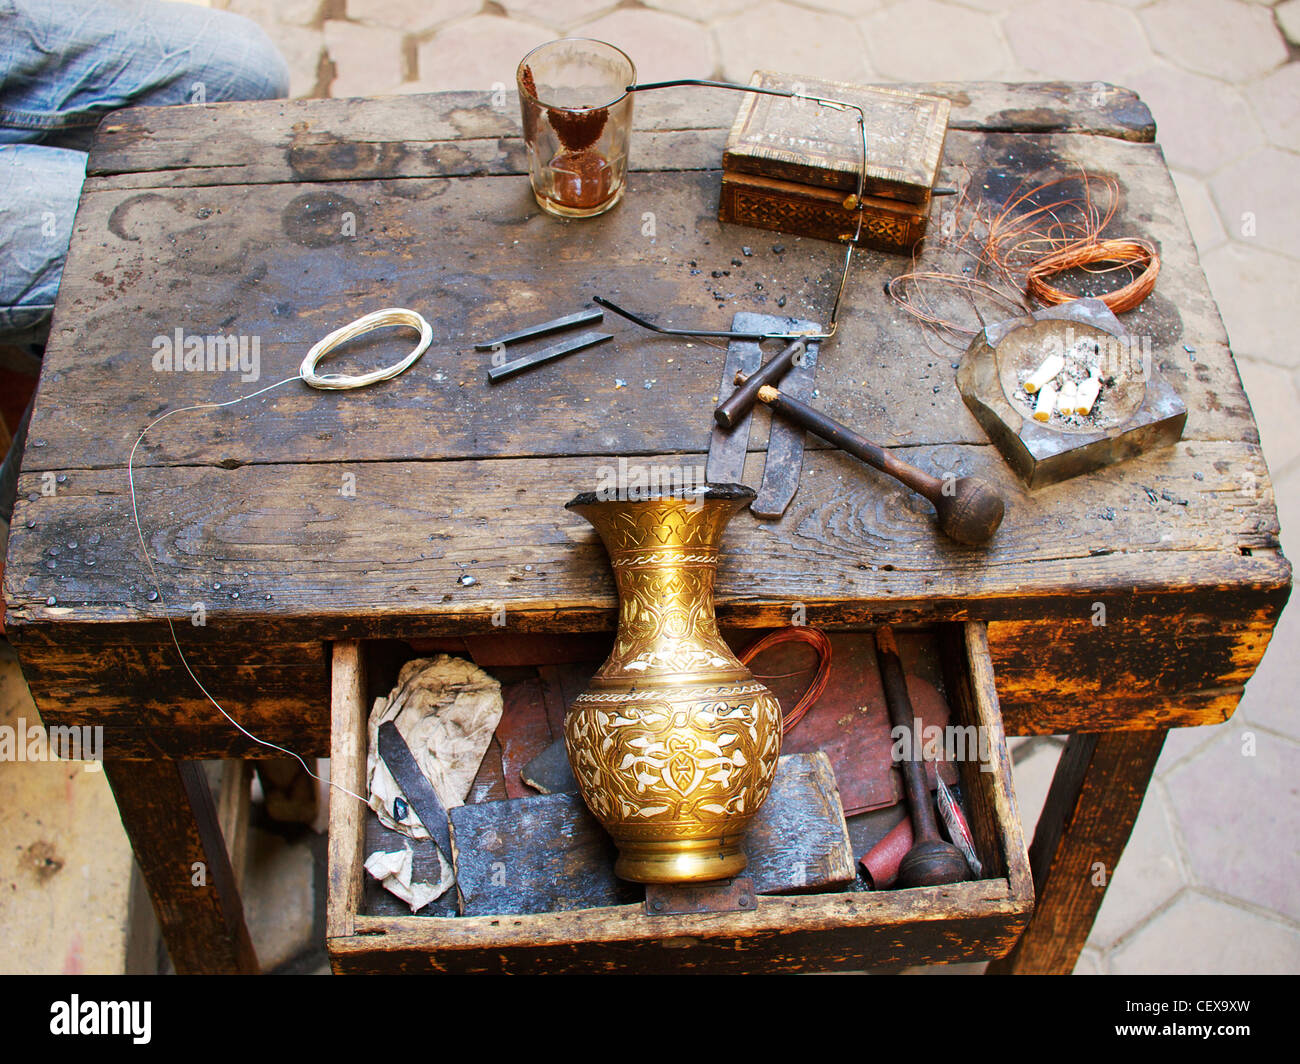 Les outils du commerce. Coppersmith traditionnel avec son banc de travail et des outils au Caire, Egypte Banque D'Images